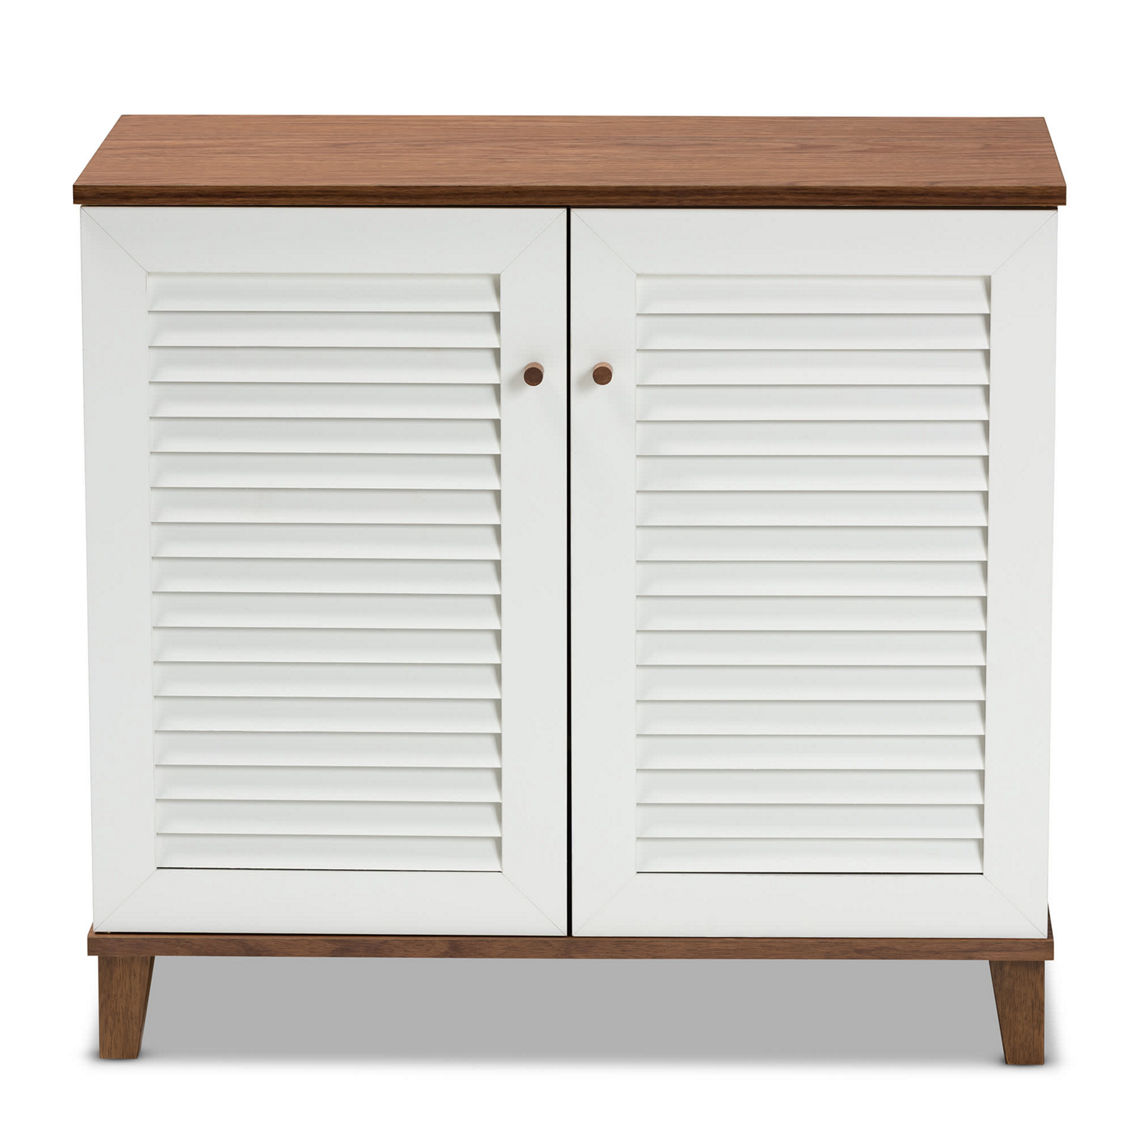 Baxton Studio Coolidge White and Walnut Finished 4-Shelf Wood Shoe Storage Cabinet - Image 3 of 5